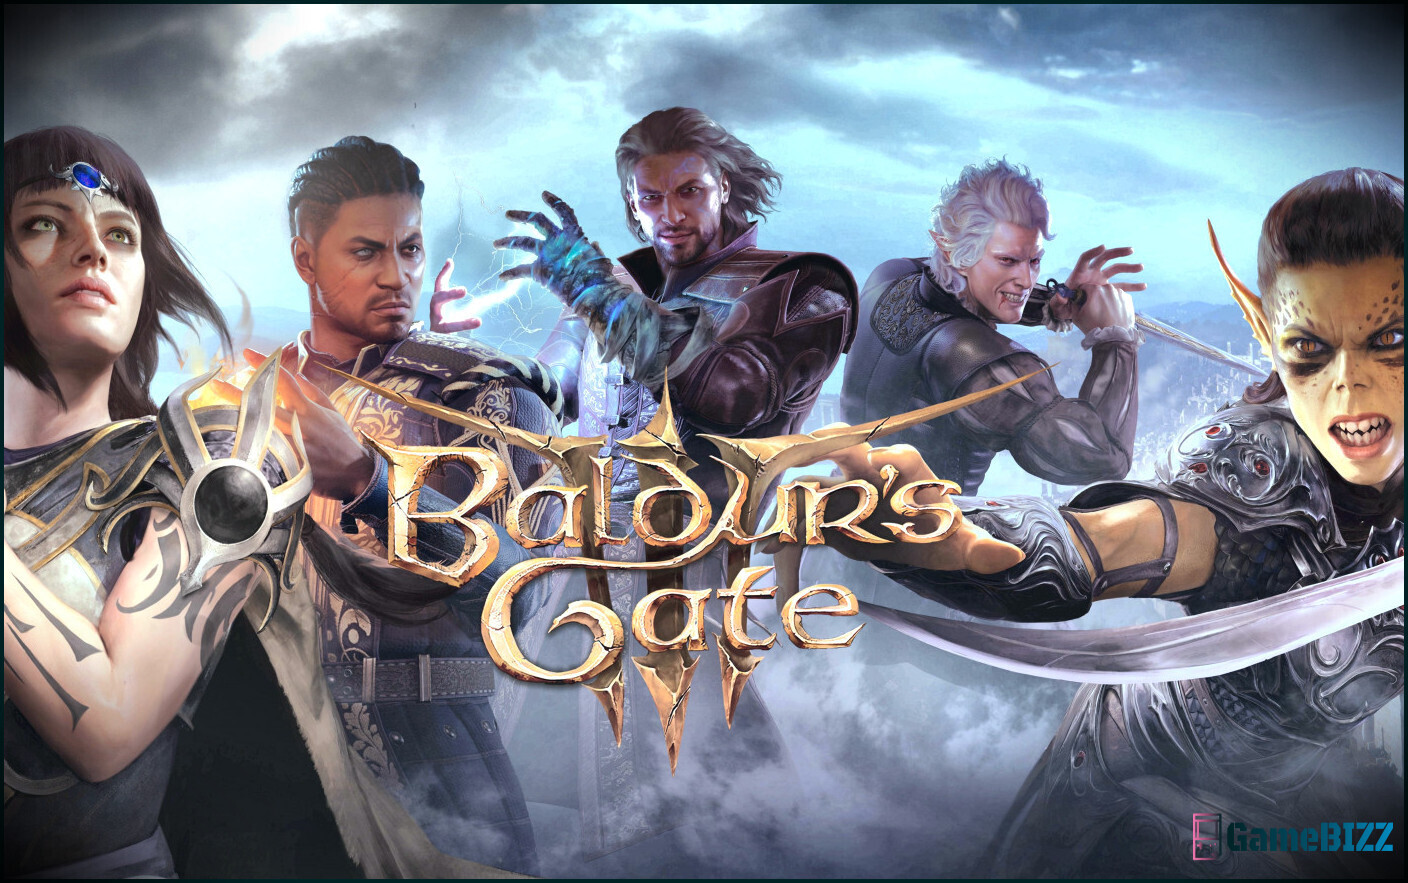 Baldur's Gate 3-Charaktere gehören zu Wizards Of The Coast, Fans entsetzt